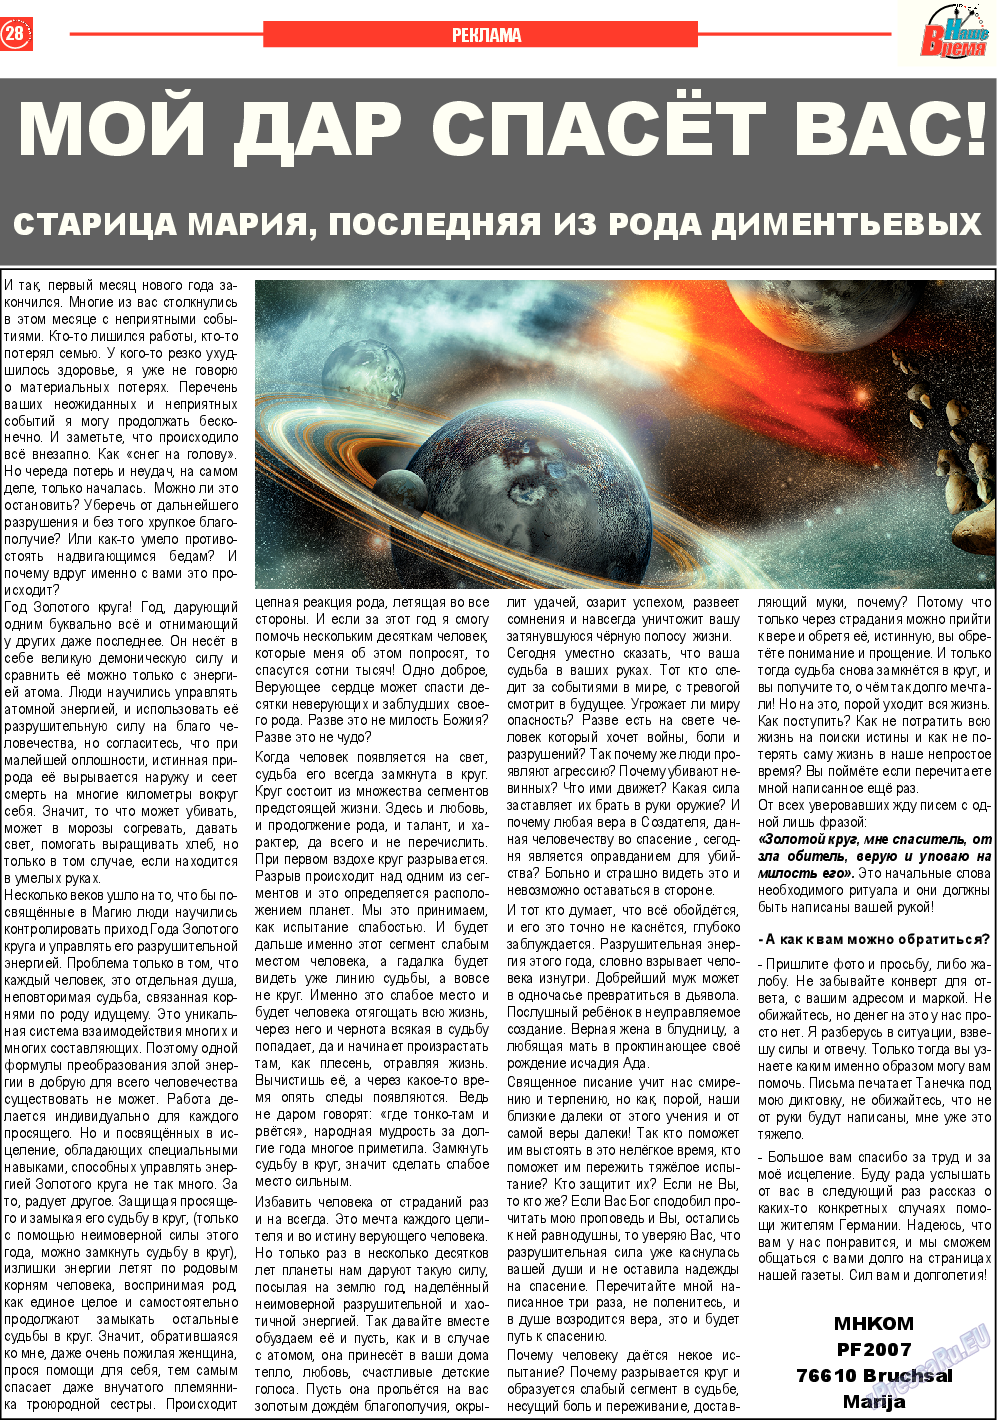 Наше время, газета. 2015 №2 стр.28